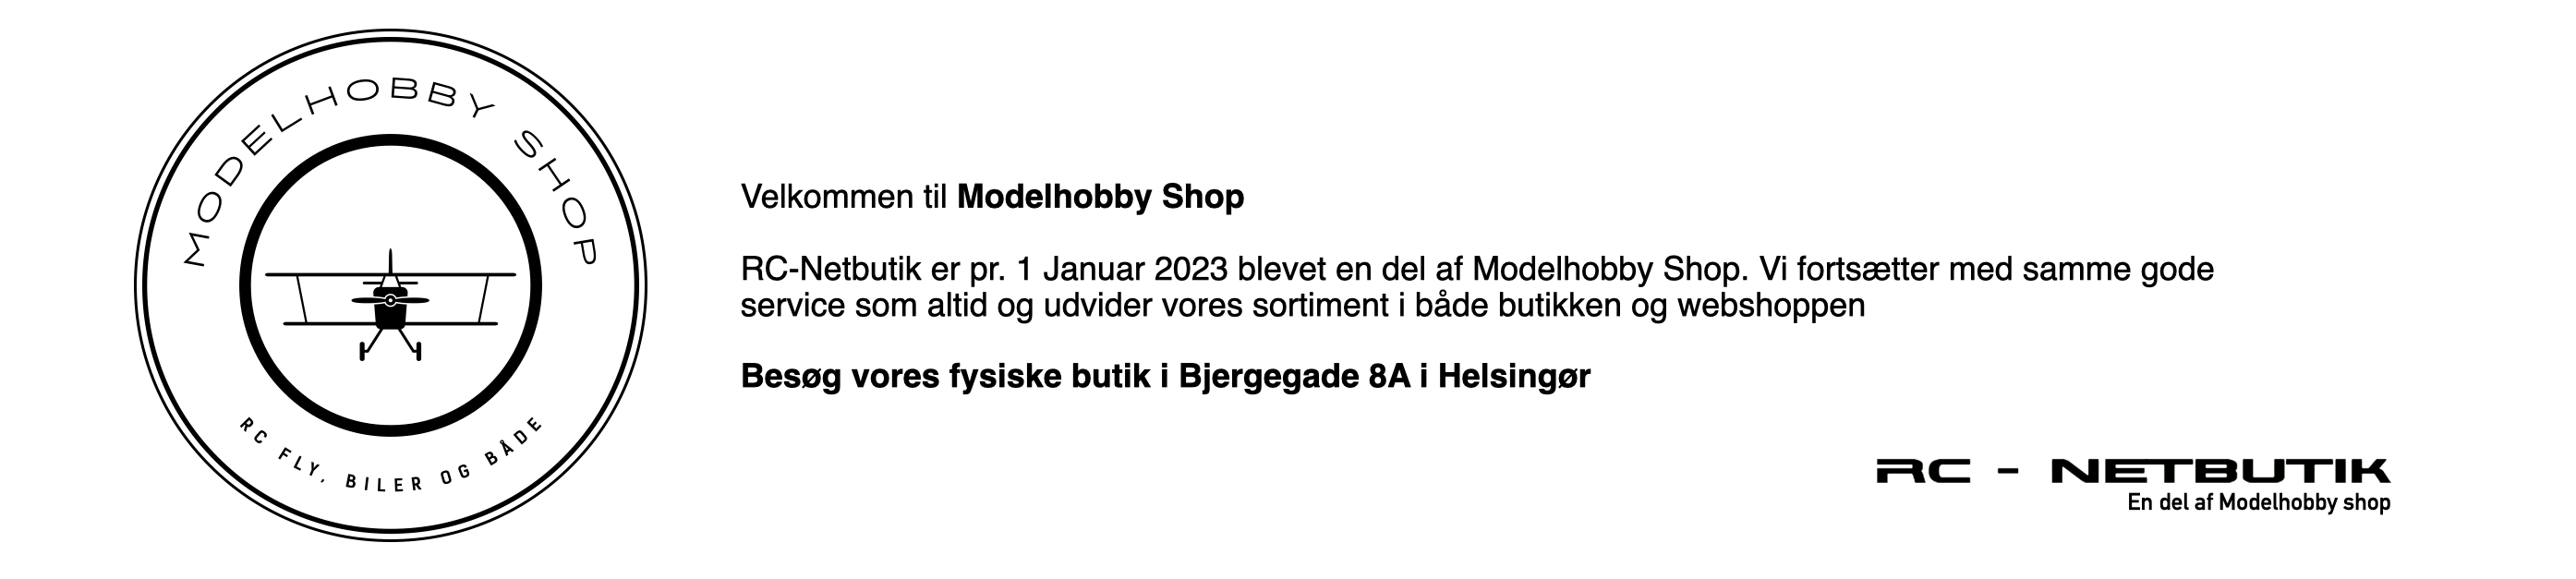 Modelhobby Shop / RC-Netbutik